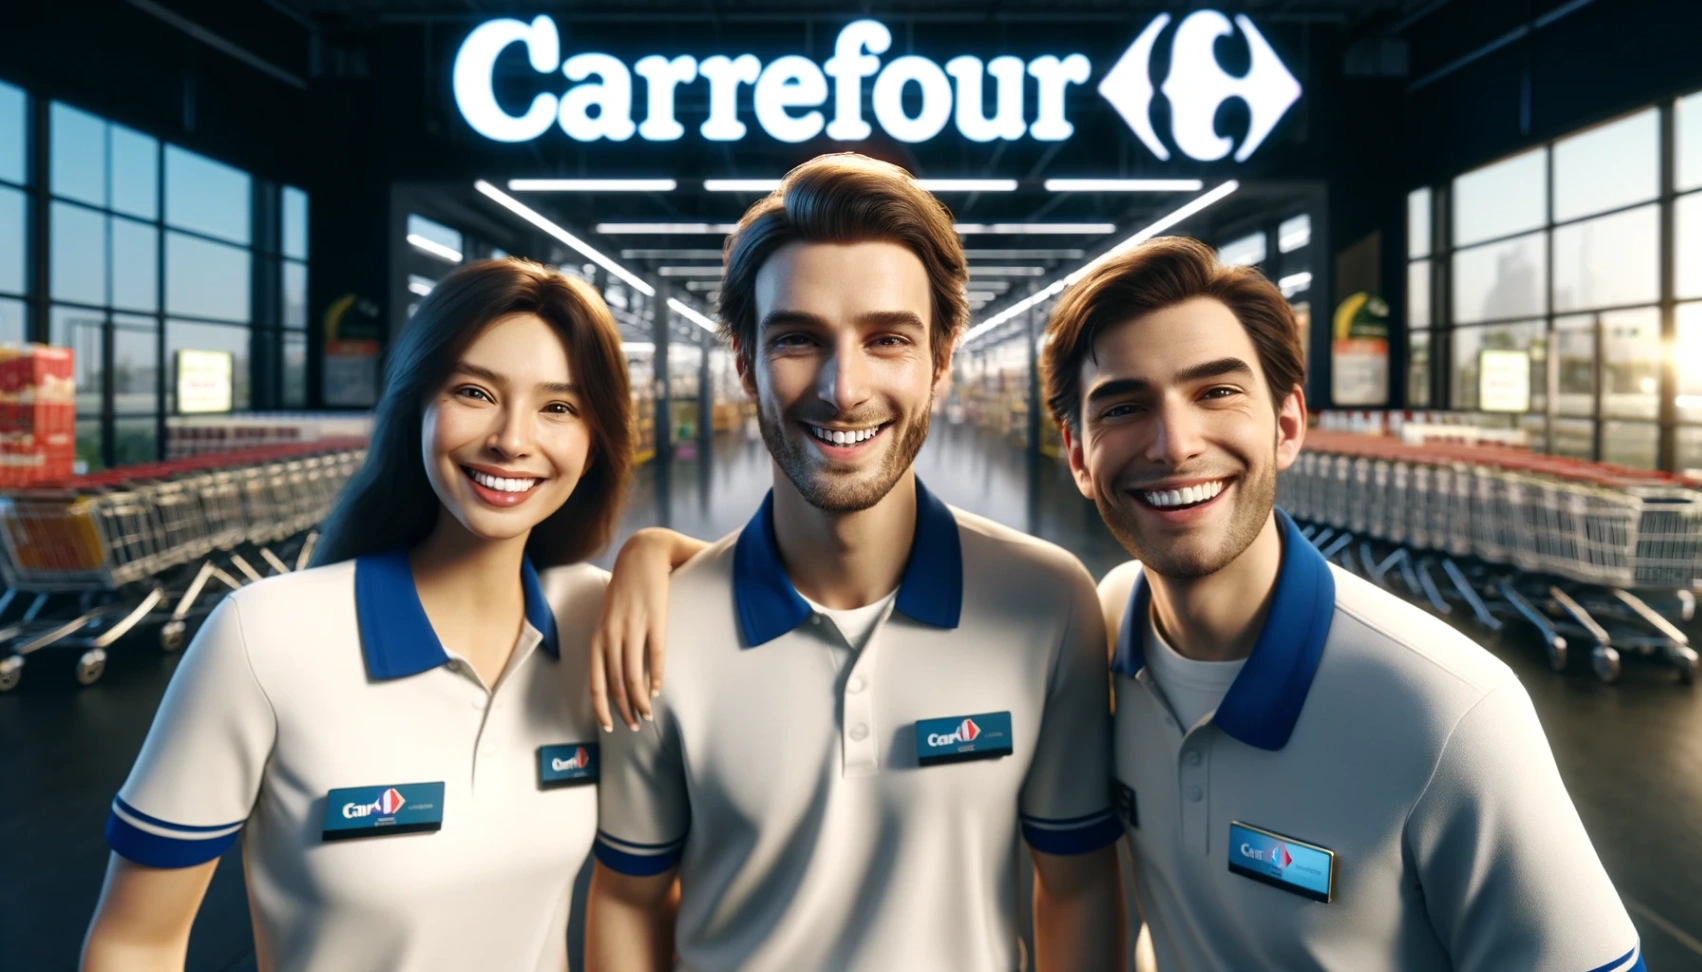 Otwarte stanowiska pracy w Carrefour - Dowiedz się, jak się ubiegać